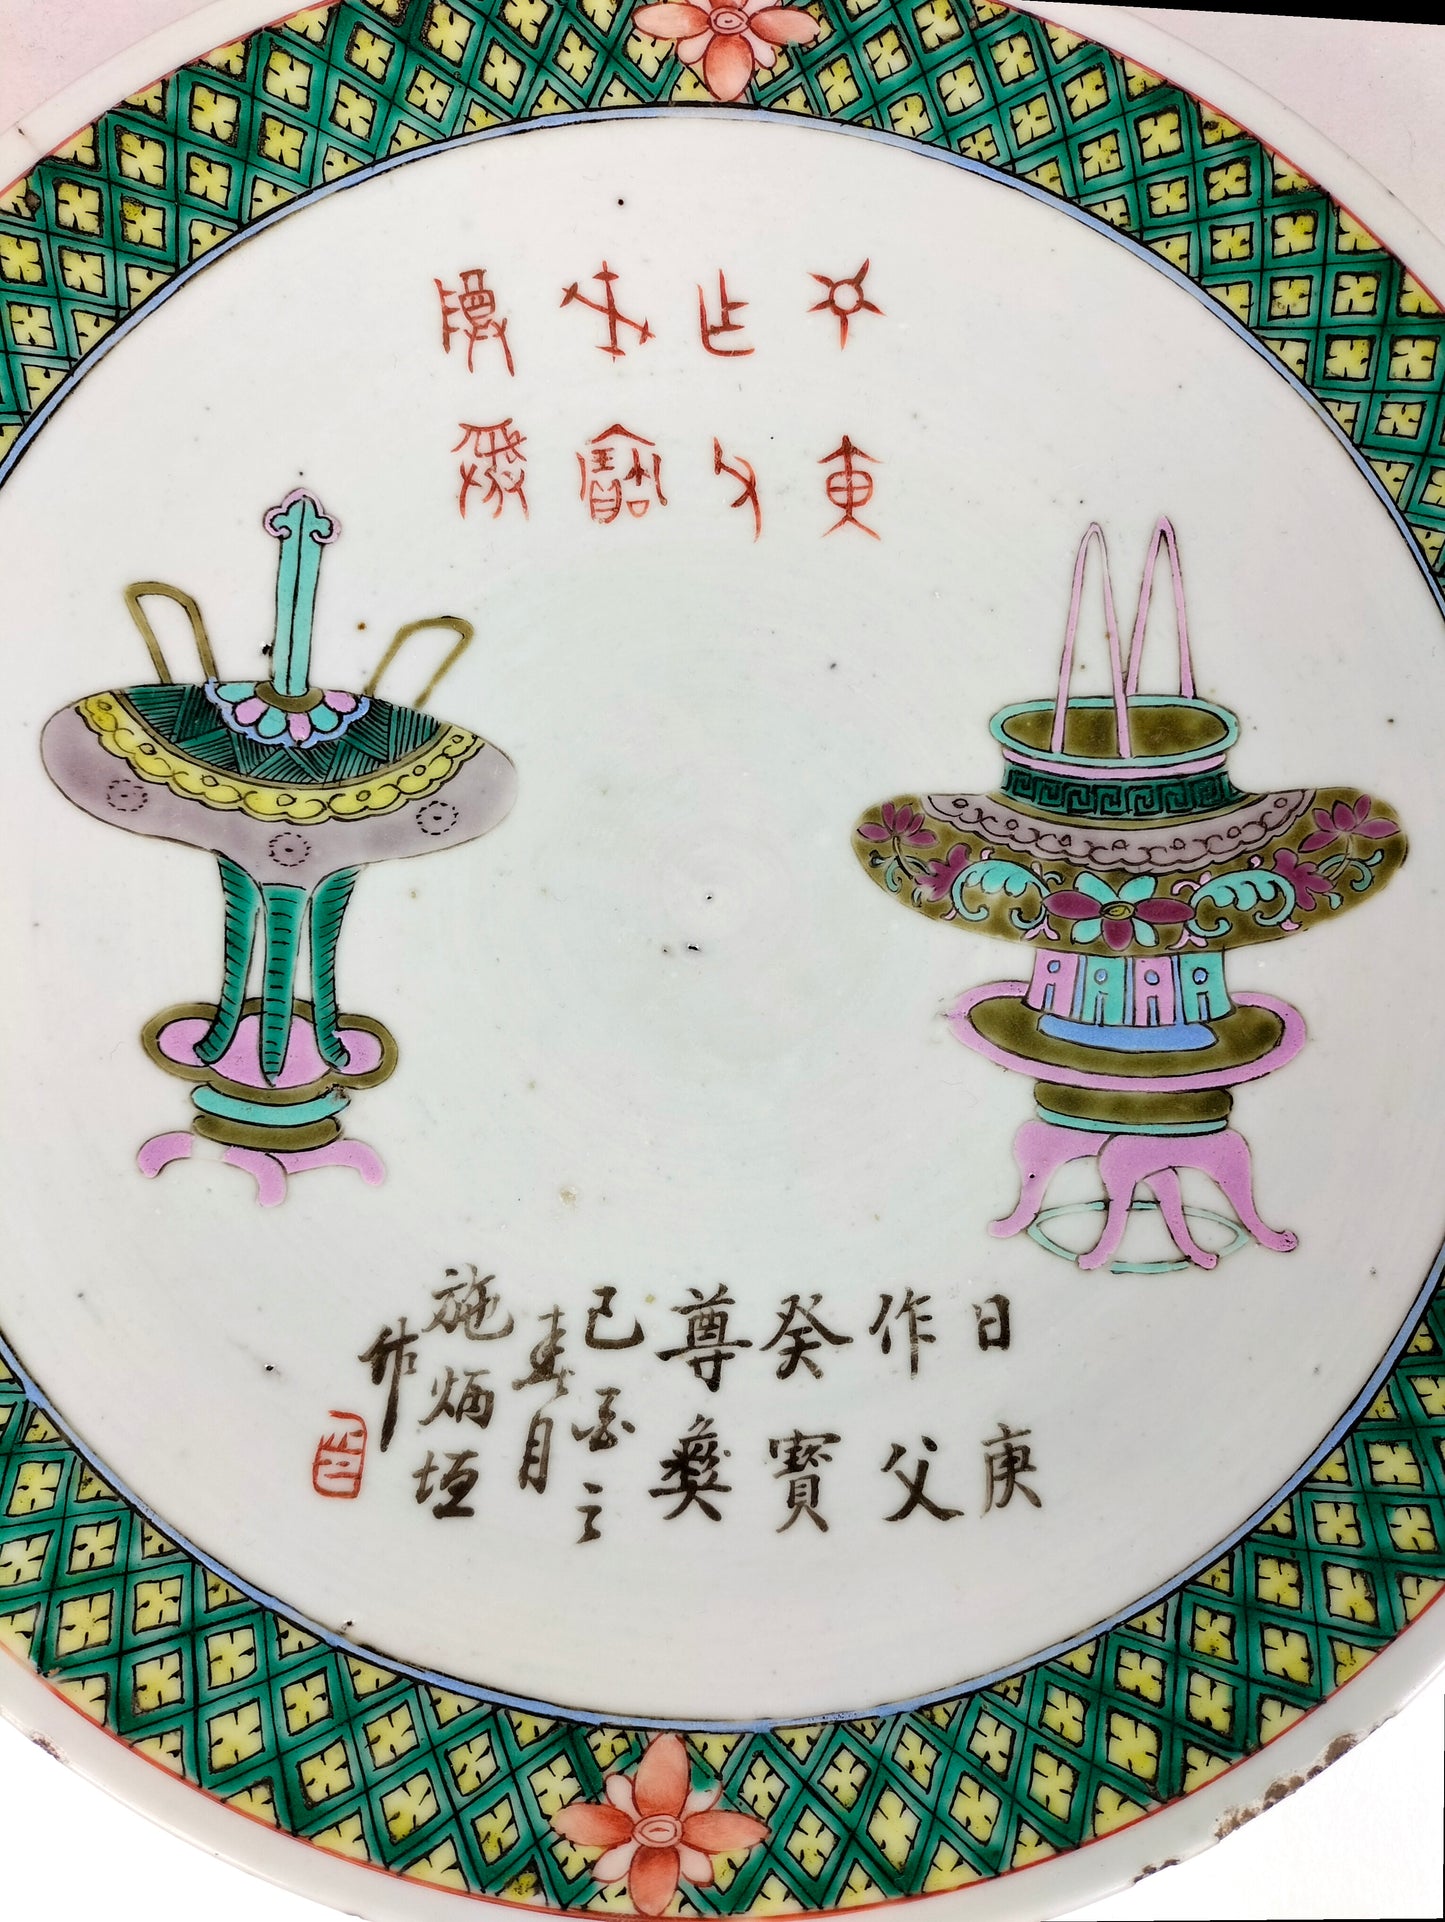 饰有古物的大型中国古董盘 // 清朝 - 19 世纪